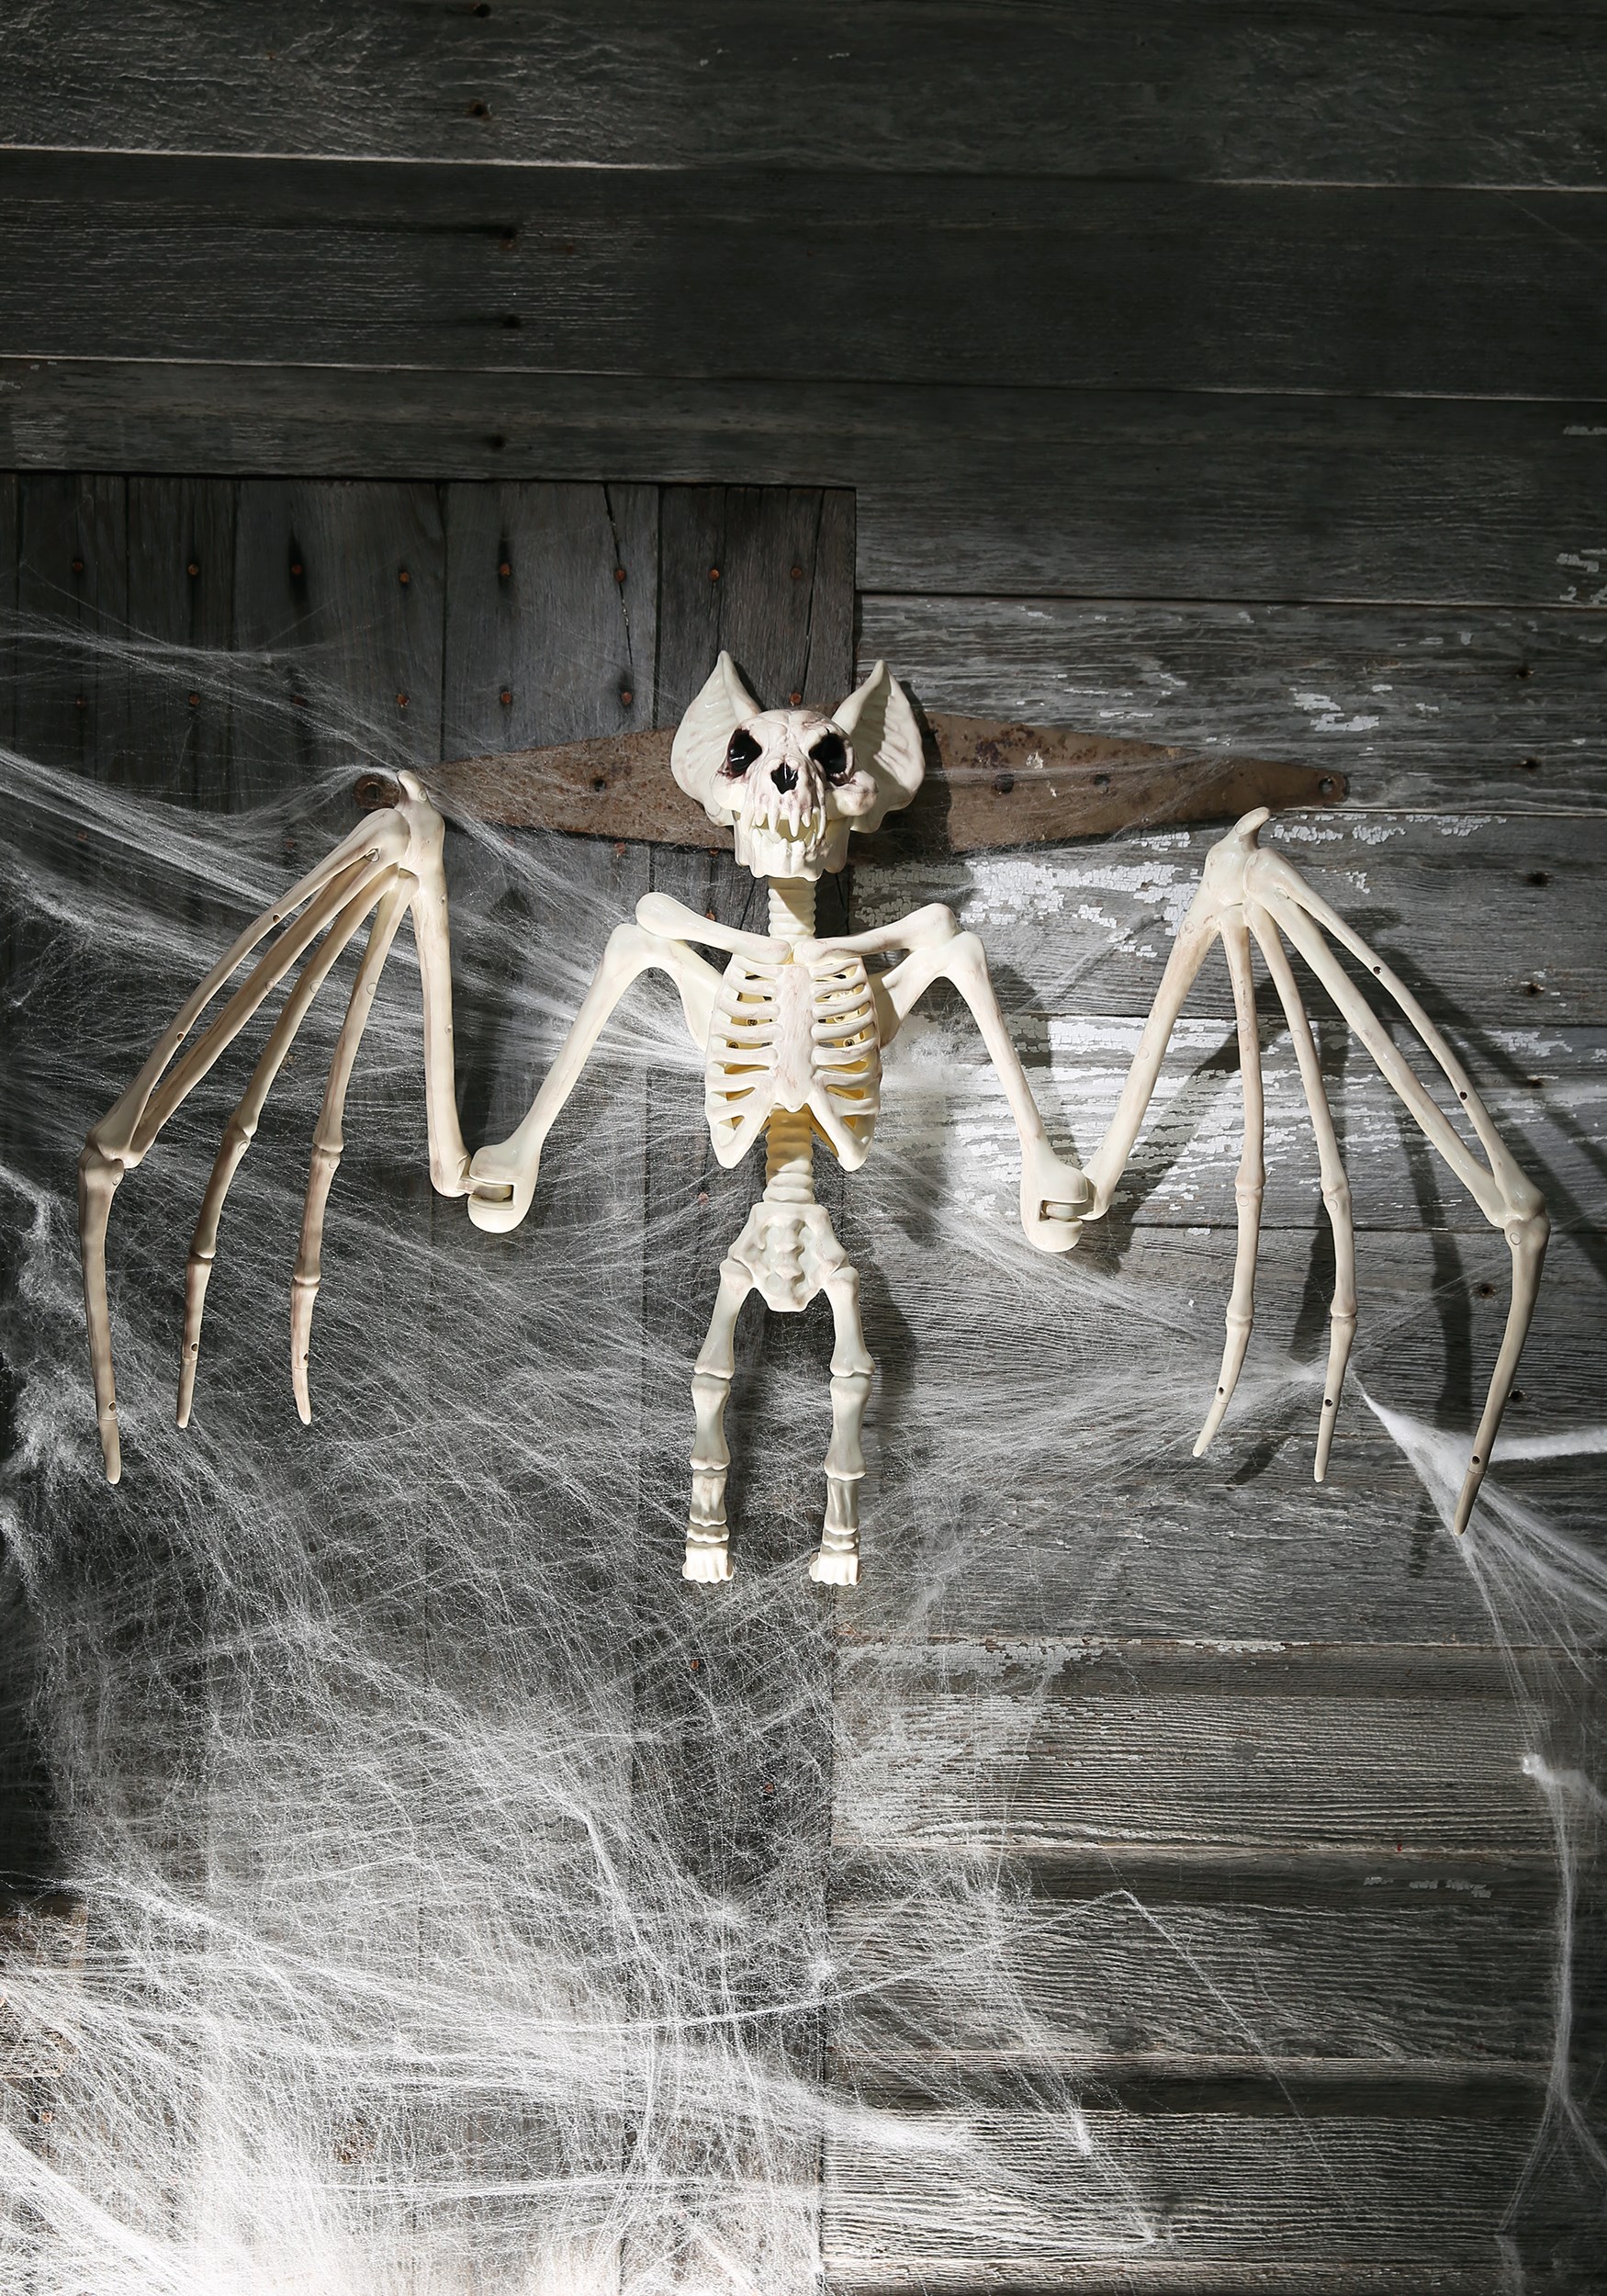 Nocturnal Bat 36'' Skeleton Decoration